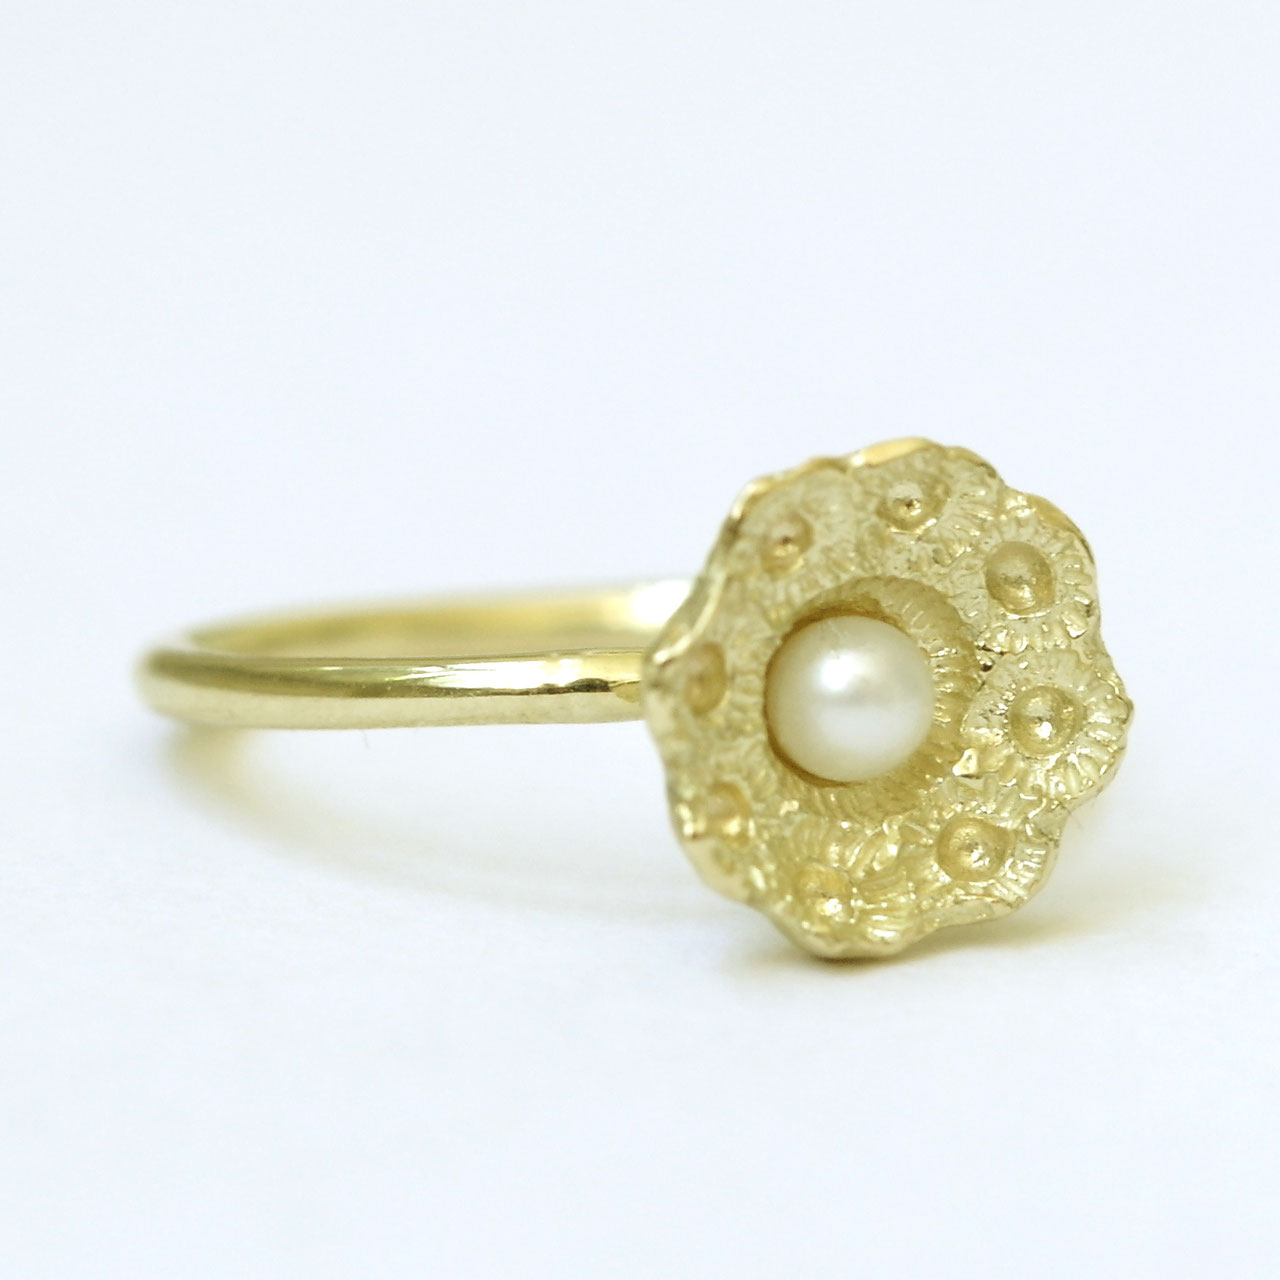 Zeeuwse ring klein goud met parel - Hester Zagt